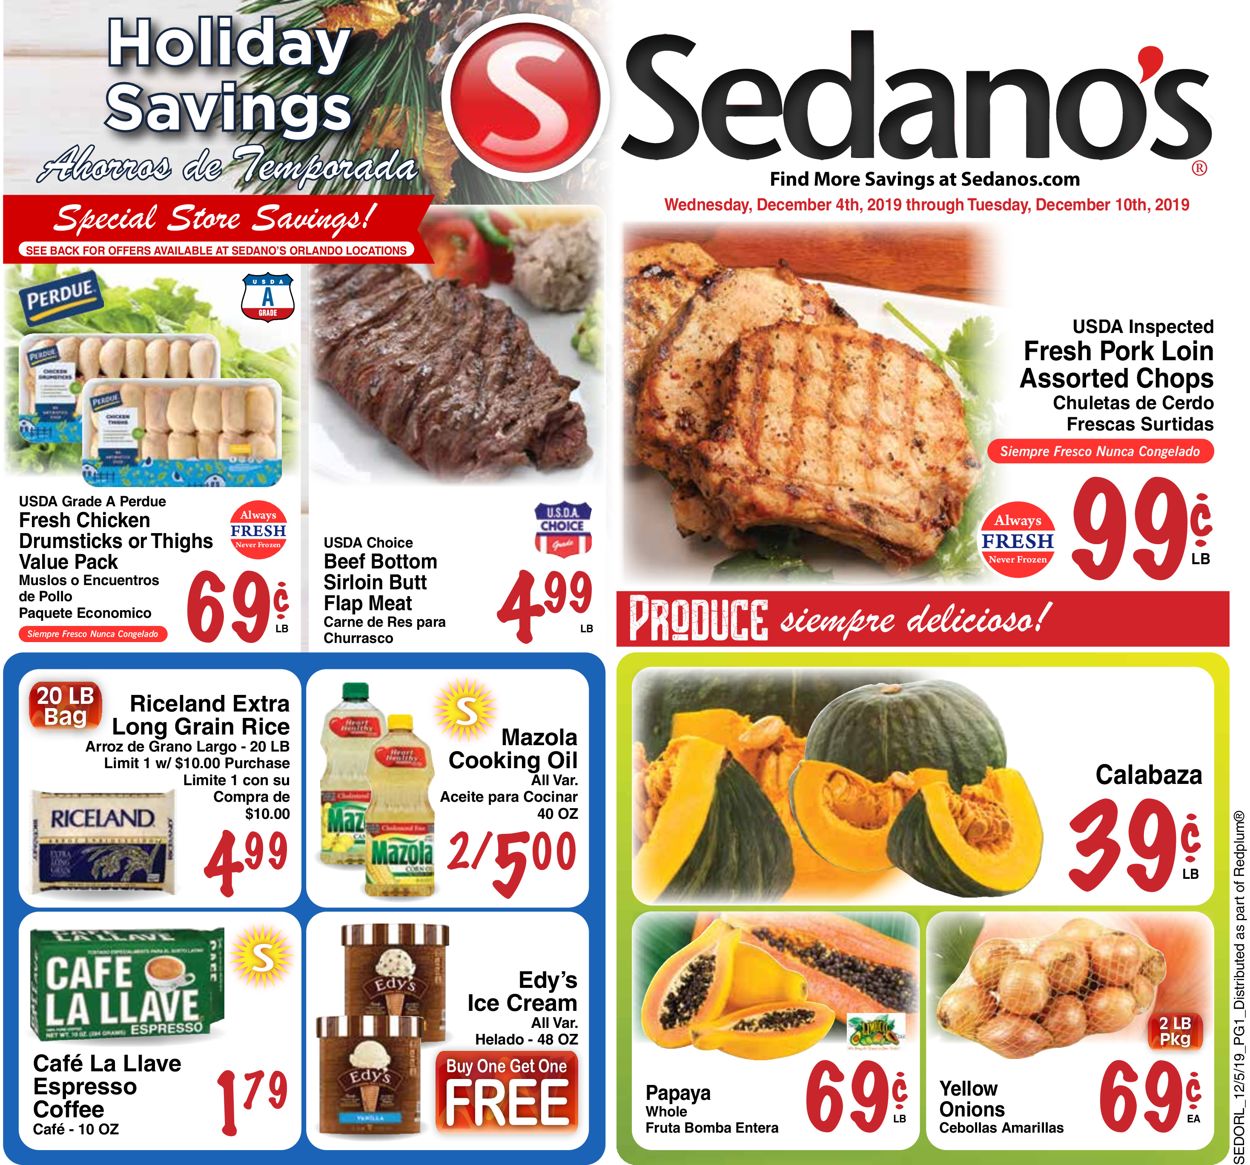 Catalogue Sedano's - Holiday Savings Ad 2019 from 12/04/2019